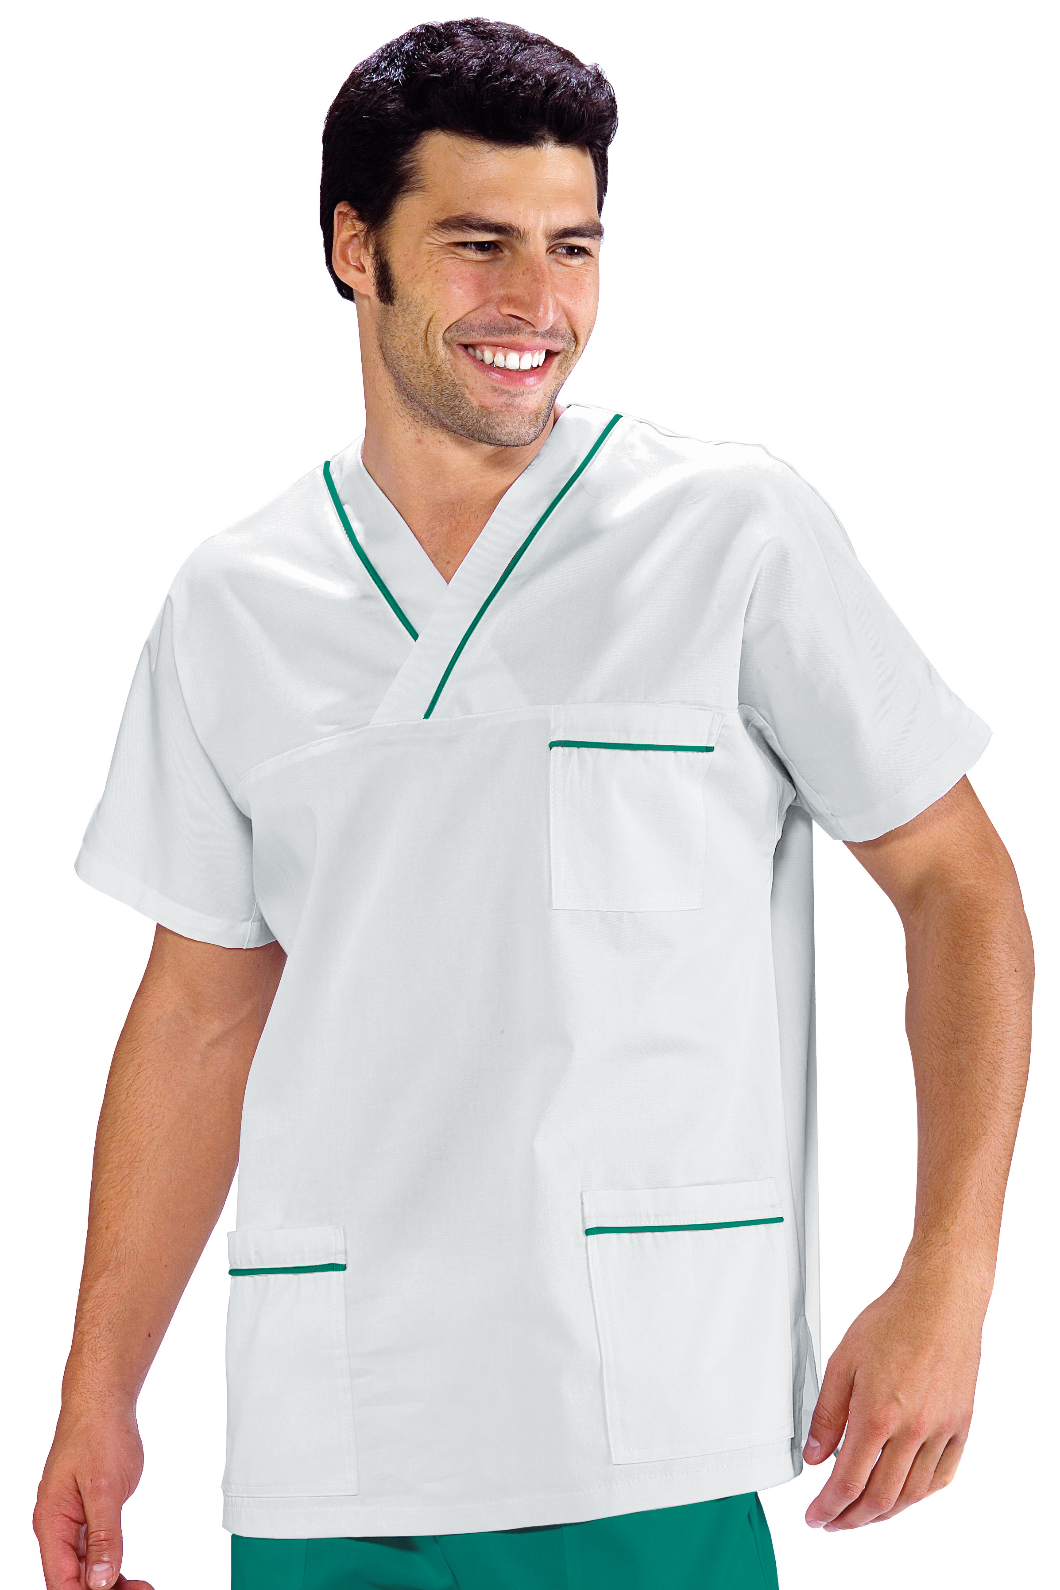 Casacca per infermiere profilo colorato – Mod. 045.104